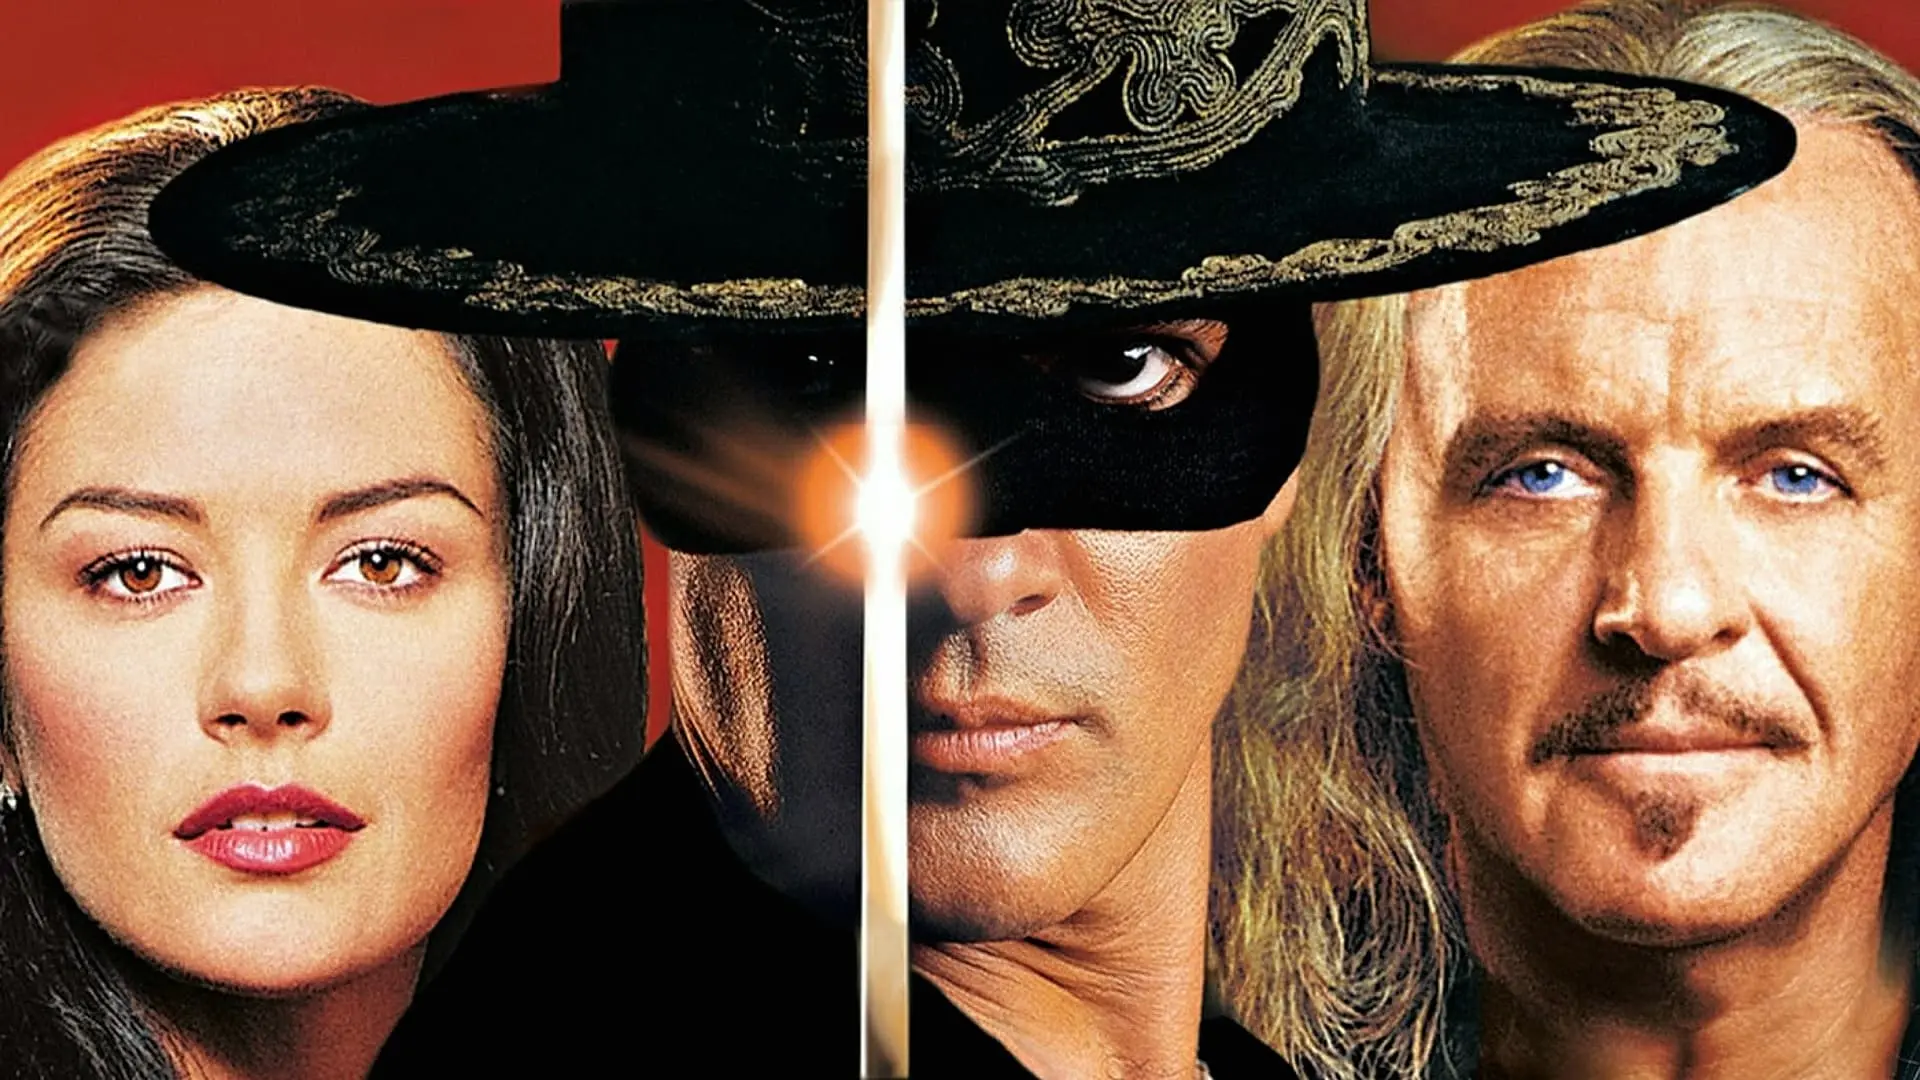 Zorro: Tajemná tvář je nedoceněný klenot bezstarostné zábavy. Kam takové filmy zmizely?